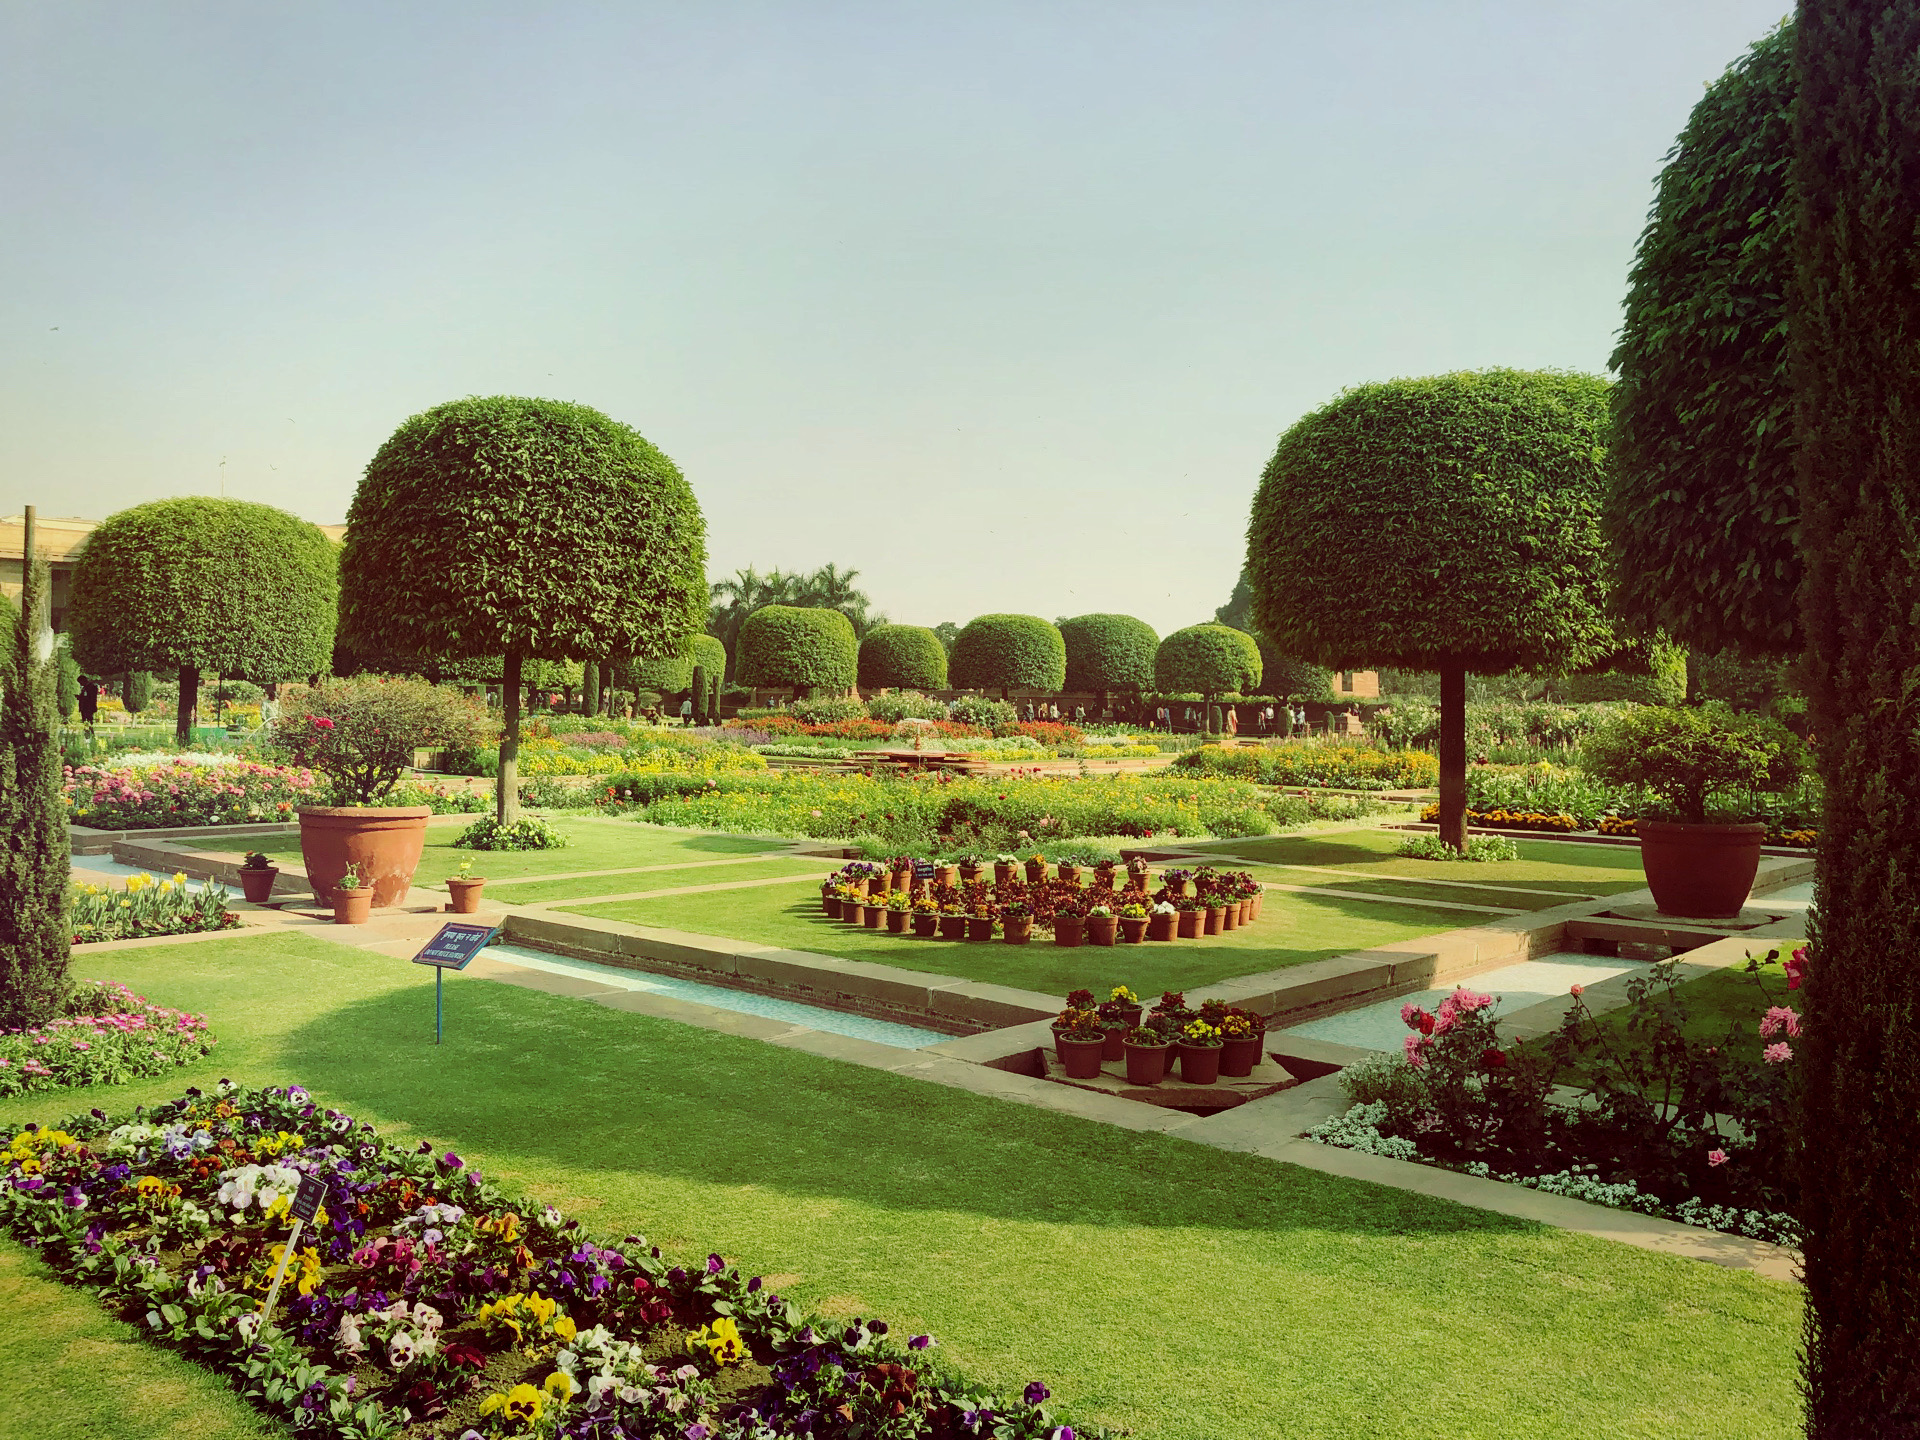 新德里莫卧儿花园景点,幸运的遇到莫卧儿花园对公众开放,所有的印度